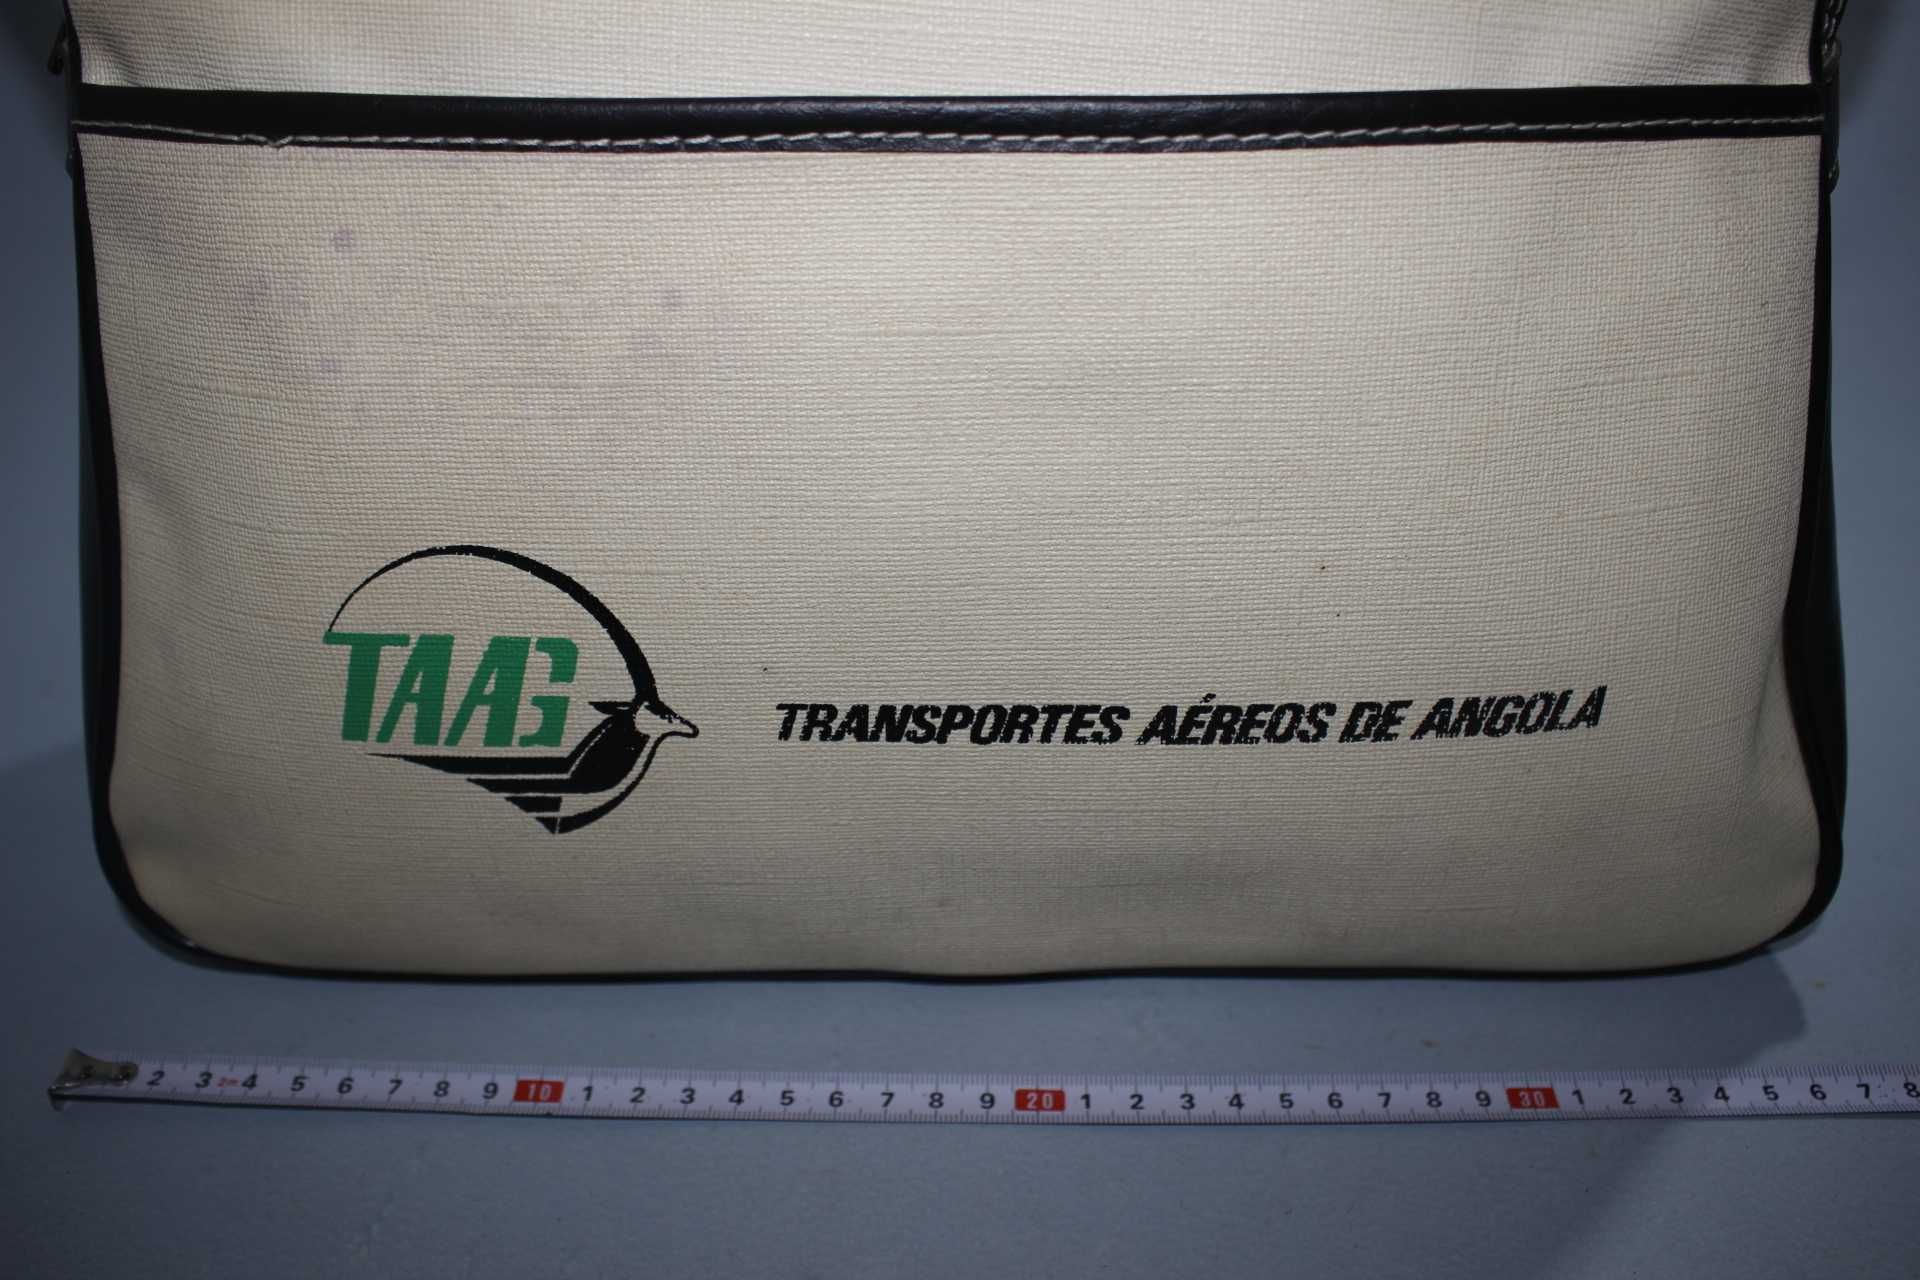 Mala de mão / Viajem - TAAG Transportes Aereos de Angola - Africa